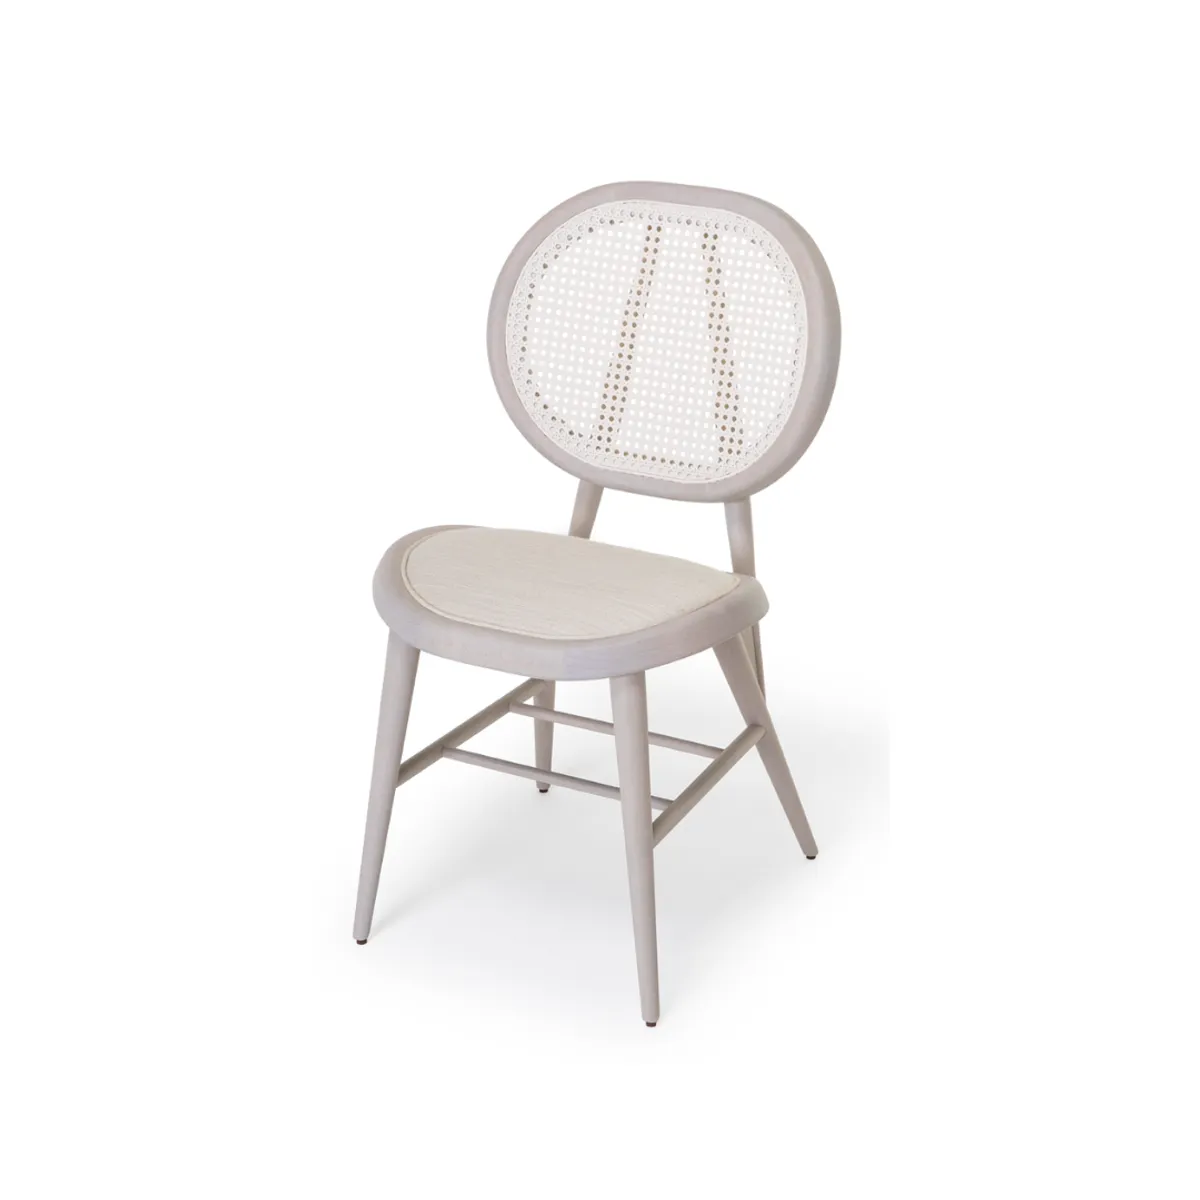 Arlo side chair 1